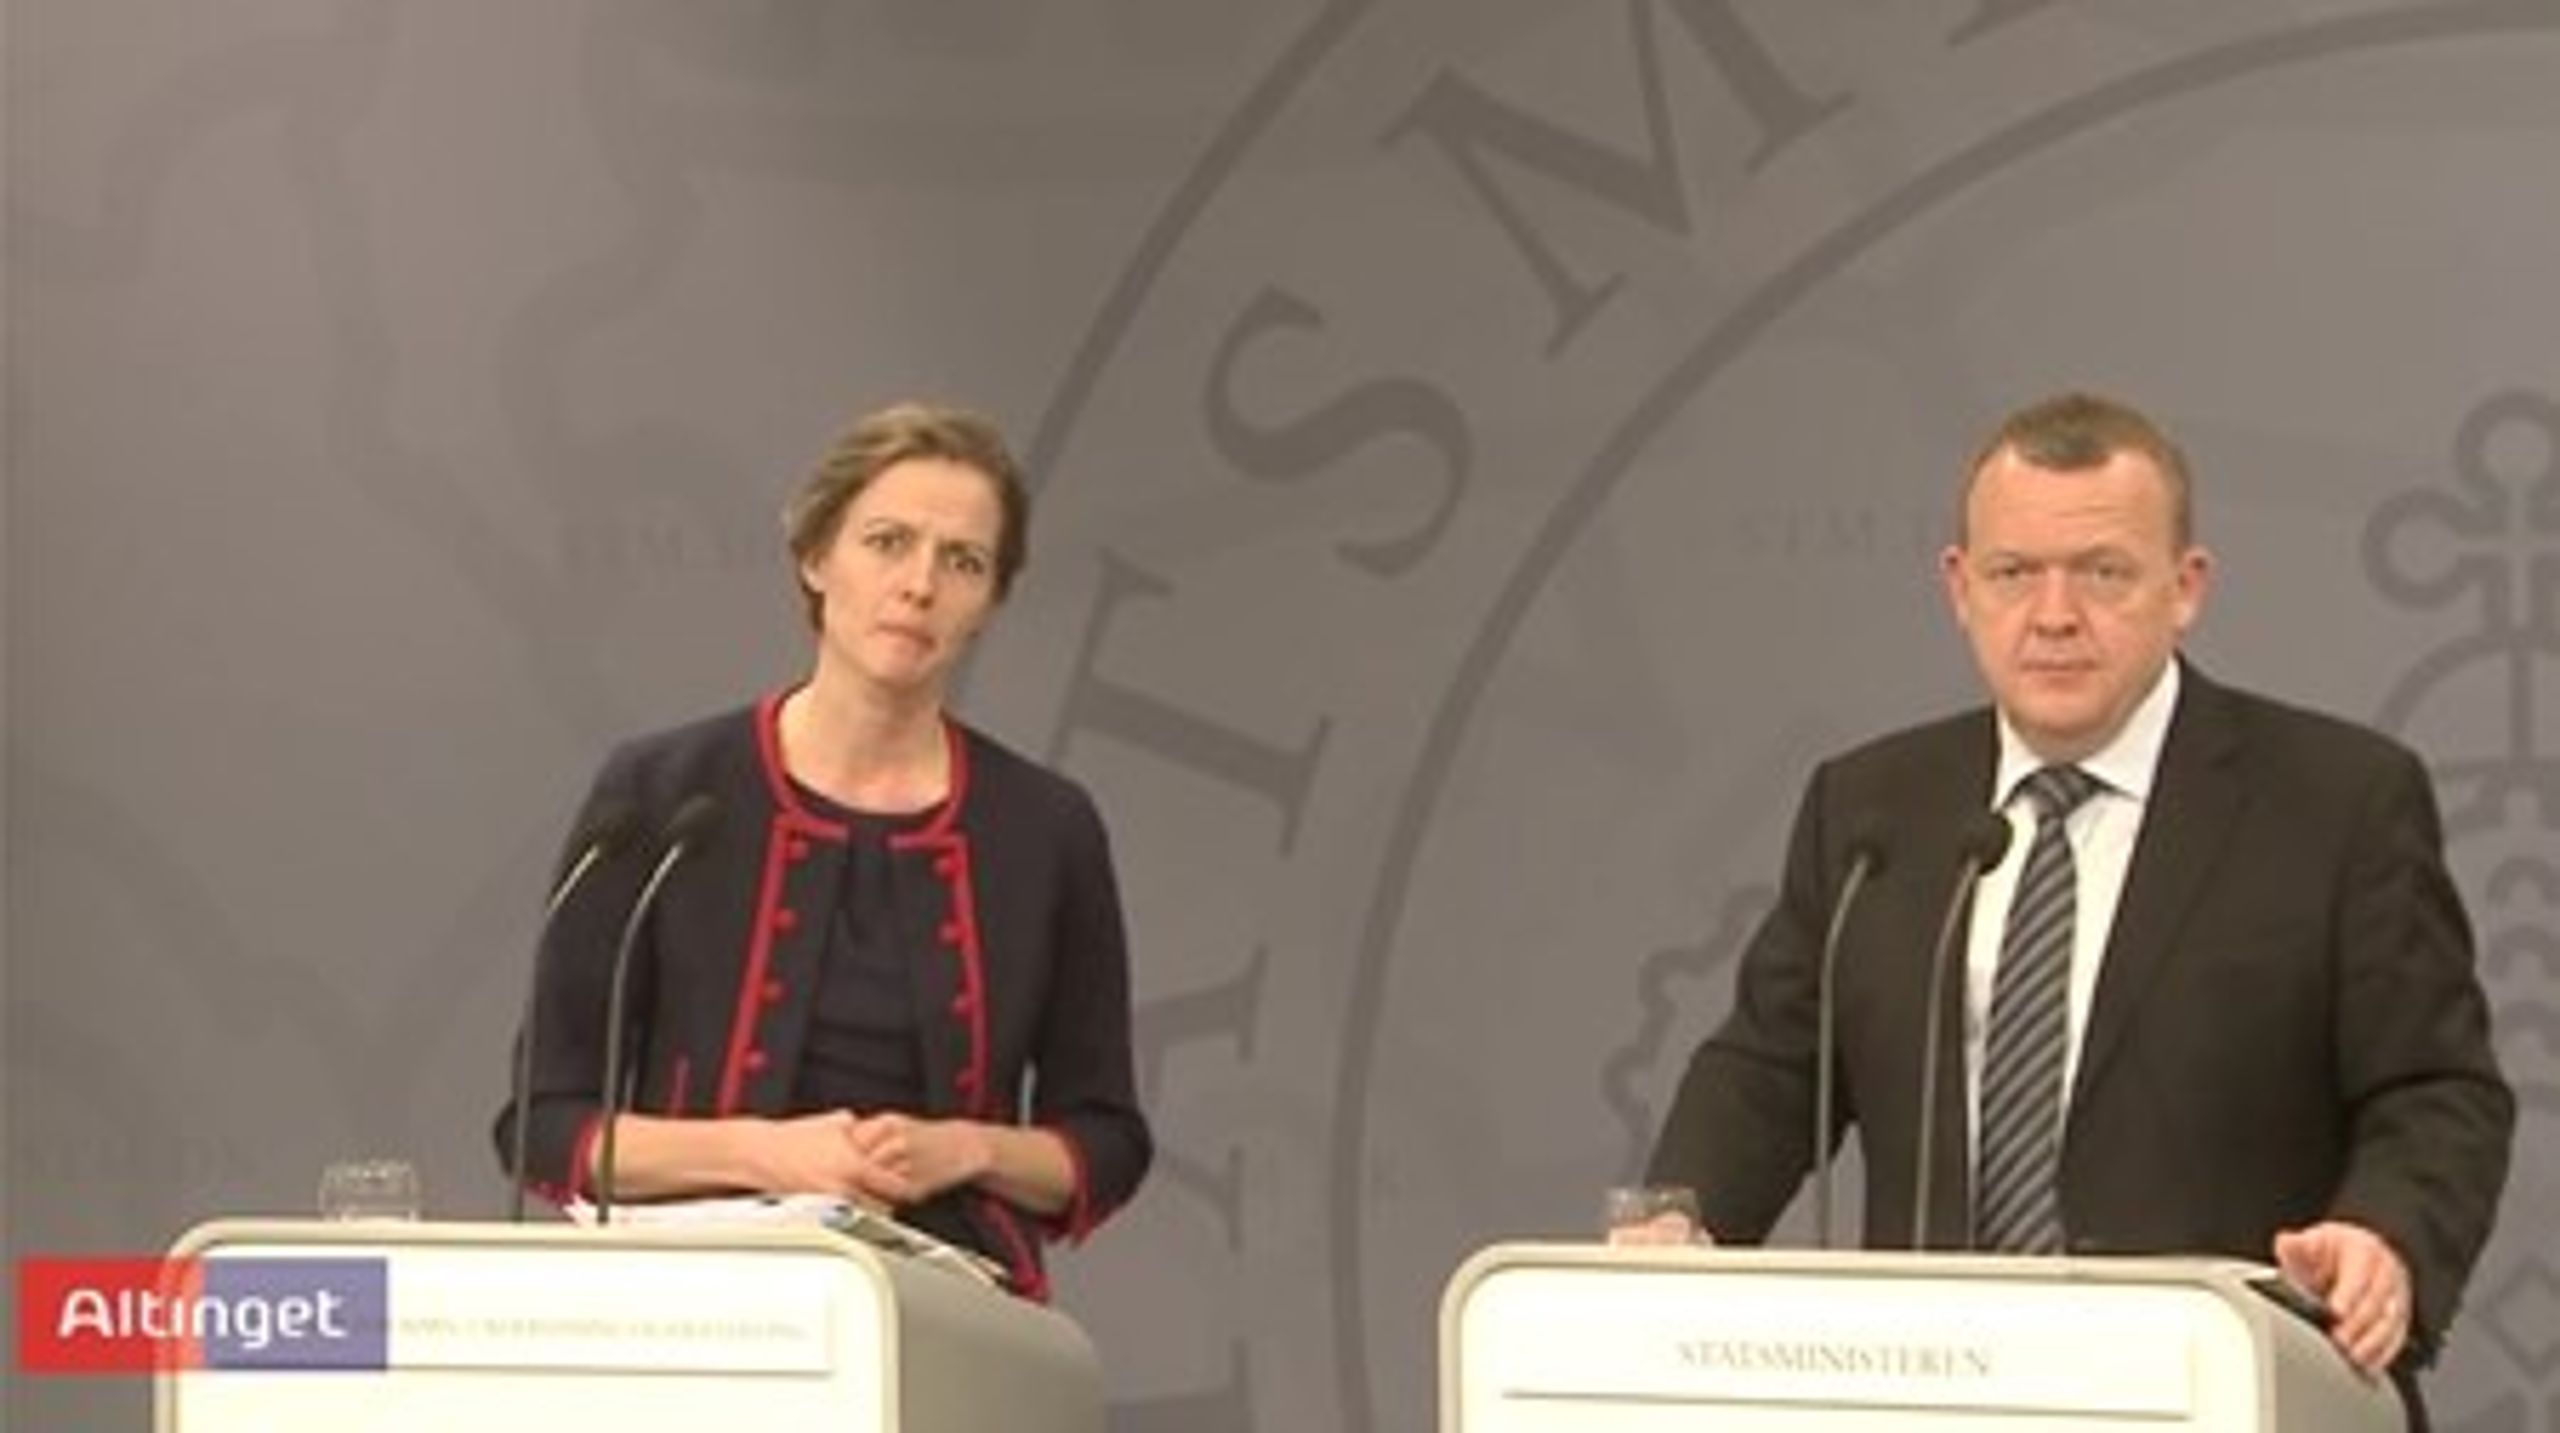 Ellen Trane Nørby og Lars Løkke Rasmussen under præsentationen af regeringens gymnasieudspil i Statsministeriet onsdag.